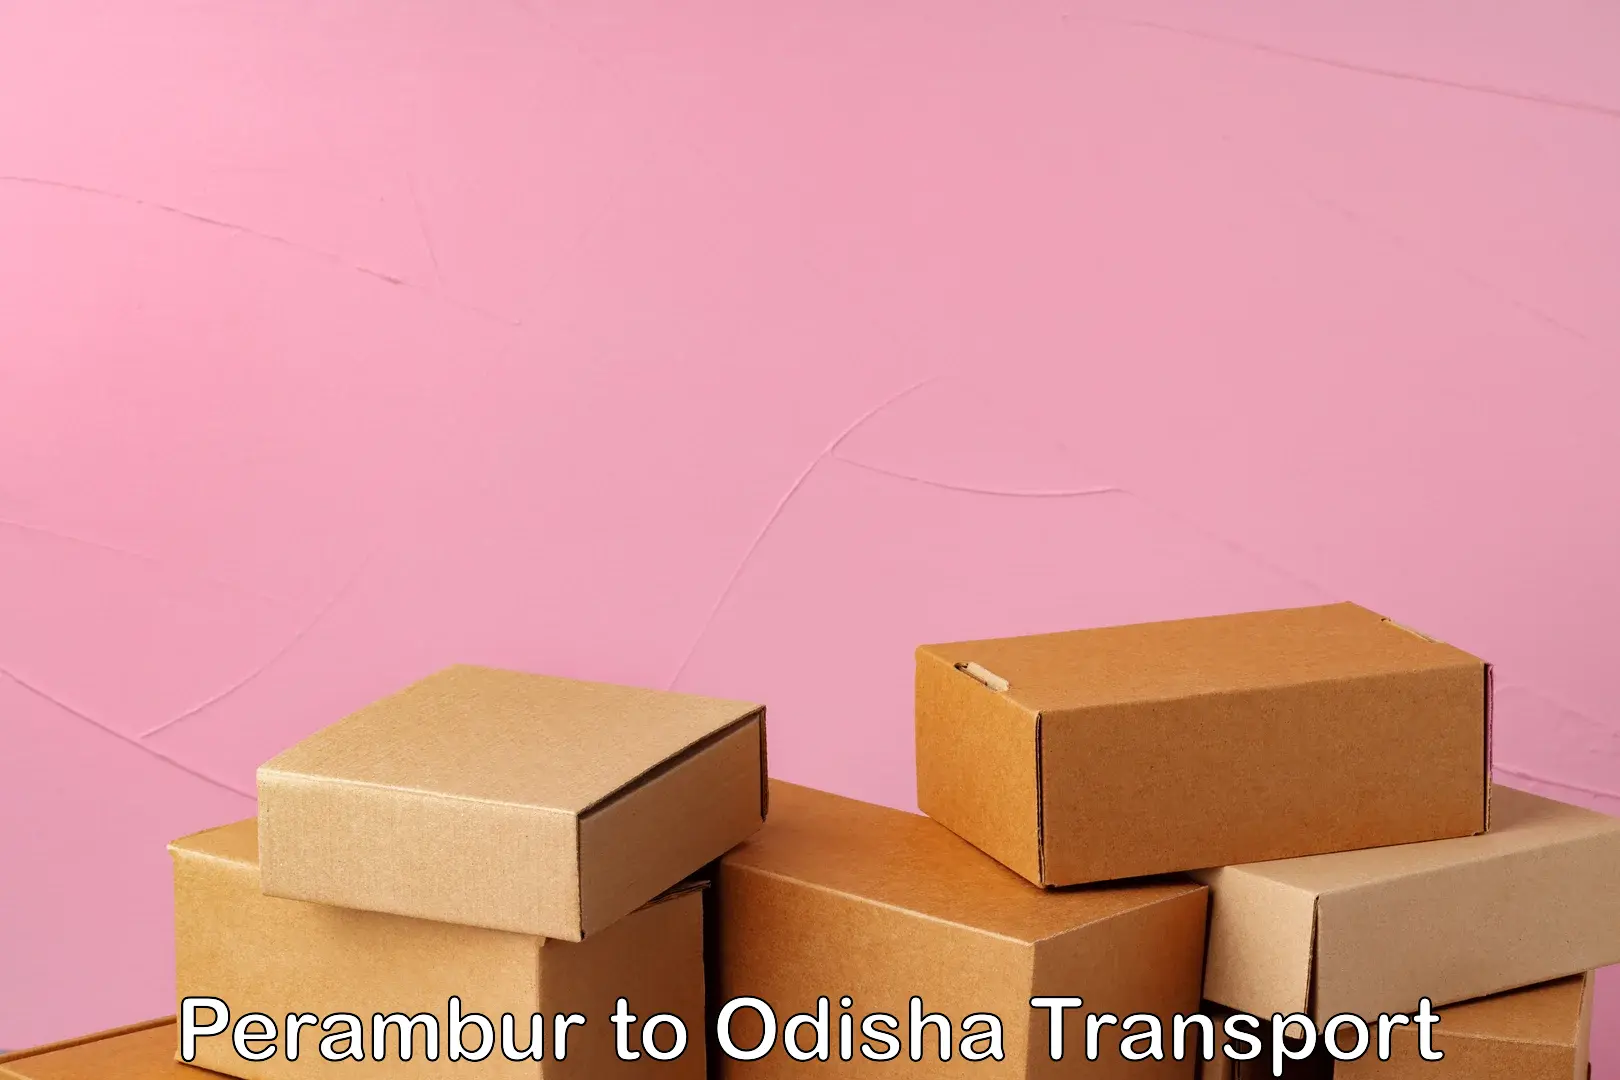 Container transport service Perambur to Balijhari